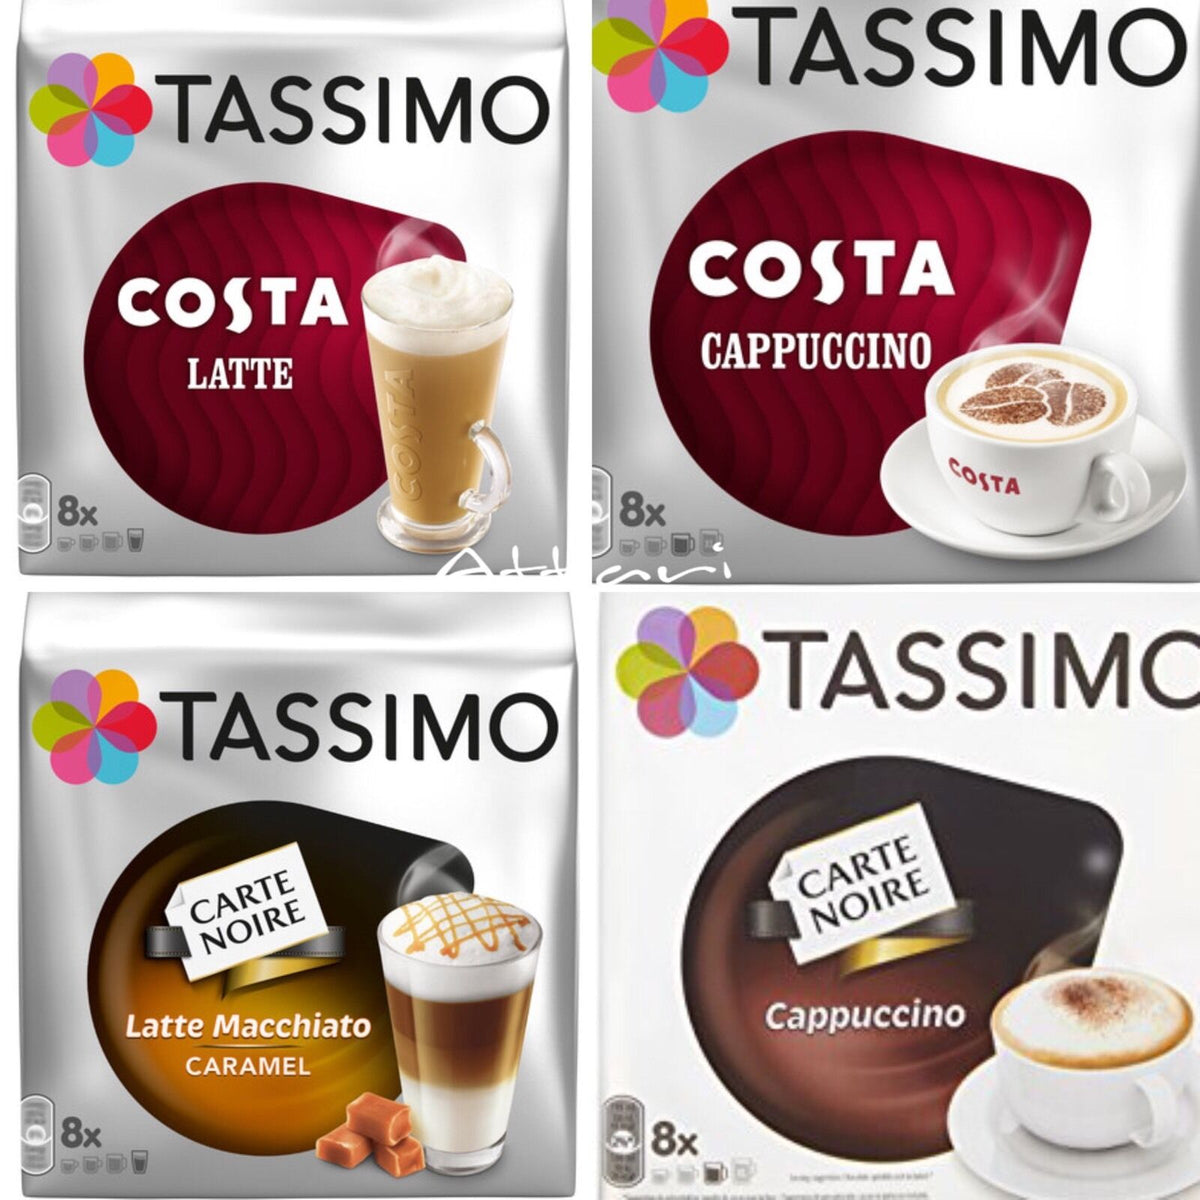 Tassimo LOr Espresso Latte Macchiato Caramel Coffee Discs